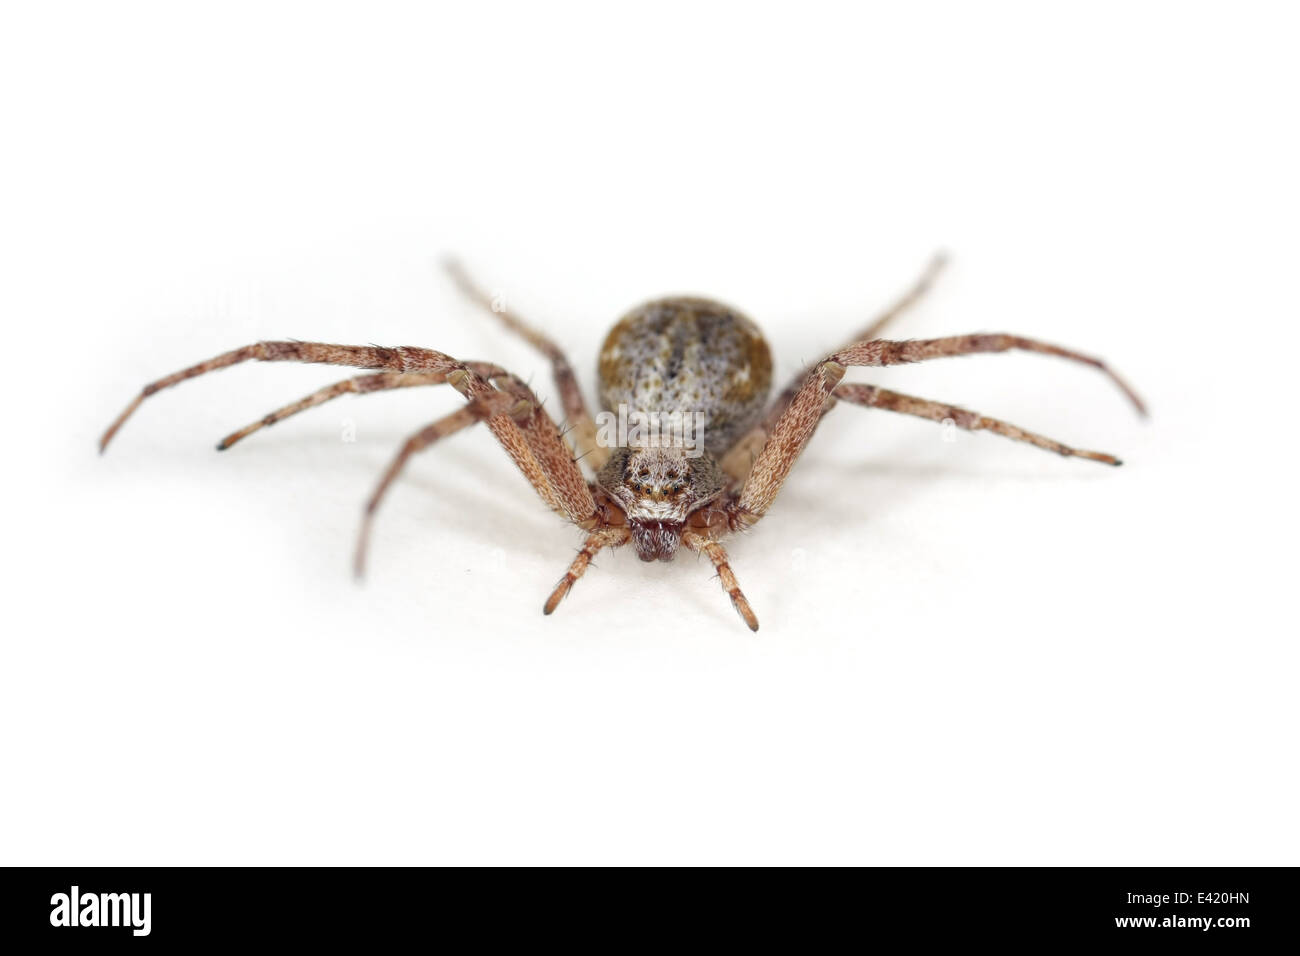 Weibliche Philodromus (Aureolus?) Spinne, Teil der Familie Philodromidae - Running Krabben Spinnen. Isoliert auf weißem Hintergrund. Stockfoto